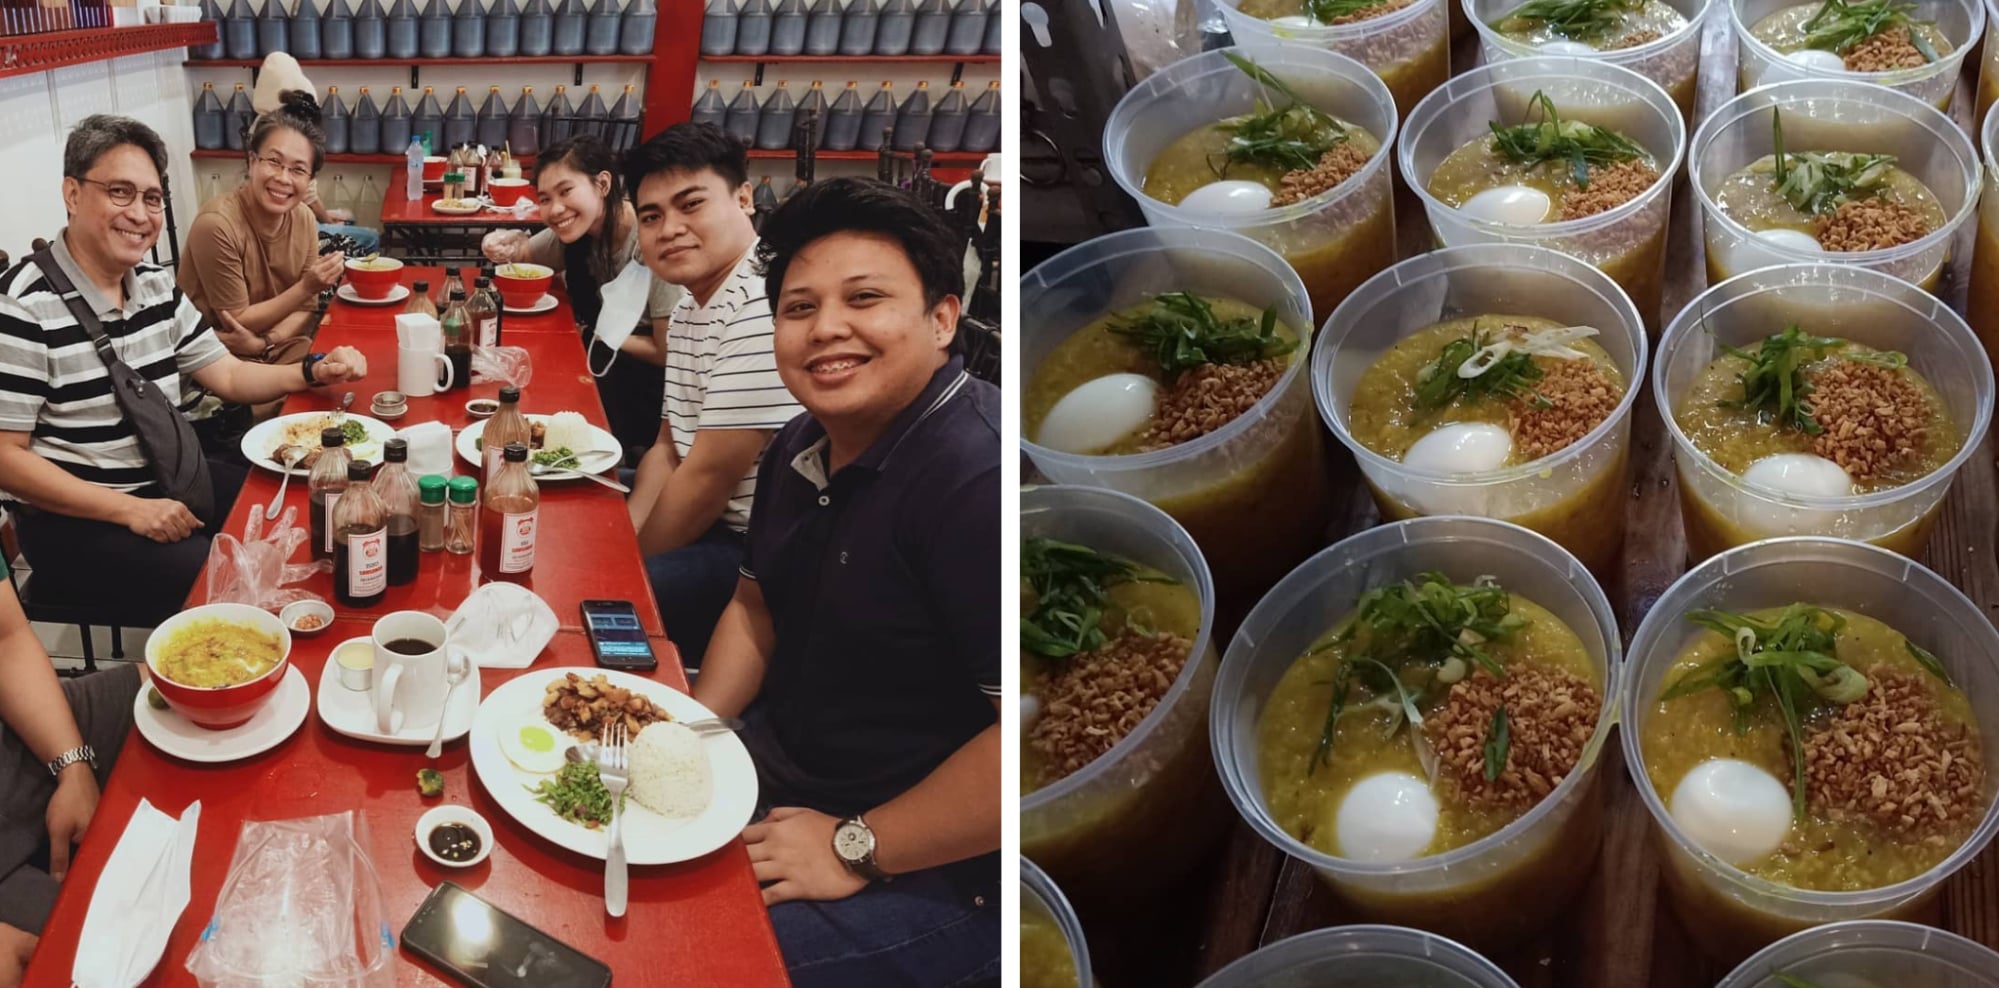 makati city restaurants filipino food - goto monster